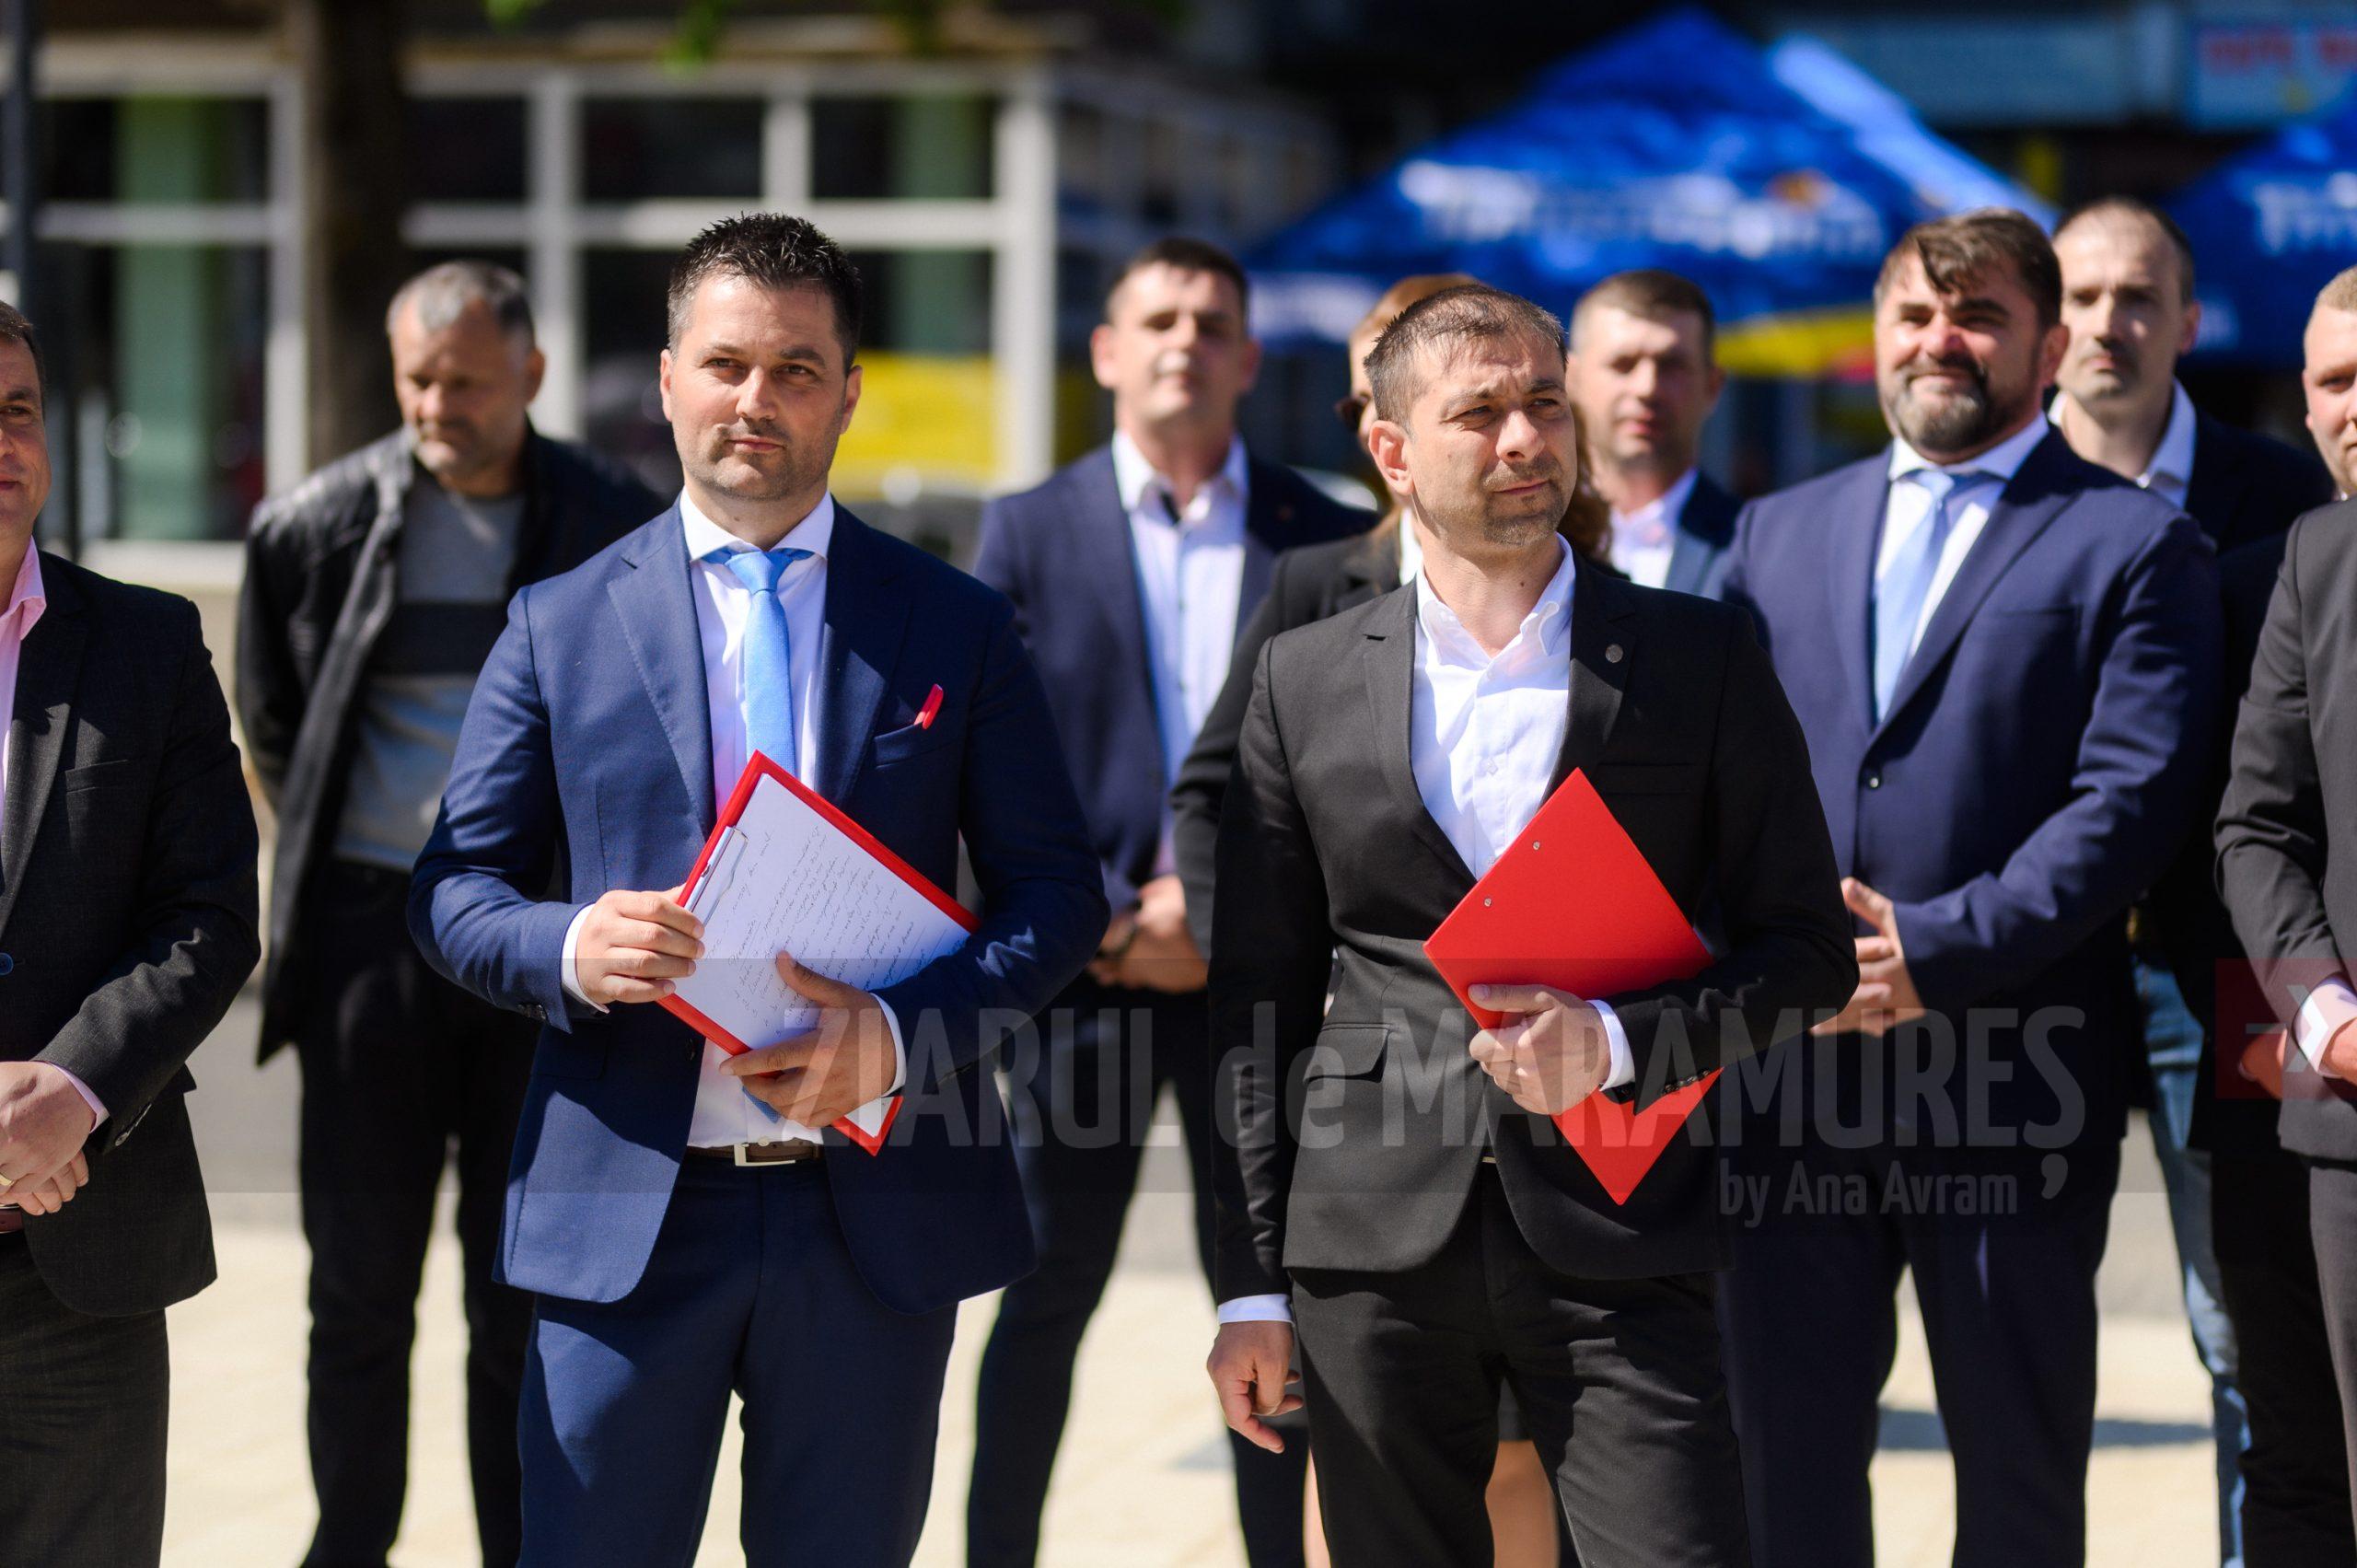 Gabriel Zetea, candidat PSD pentru Consiliul Județean: ”Suntem aleși pentru patru ani de zile și trebuie să finalizăm proiectele în decursul unui mandat”